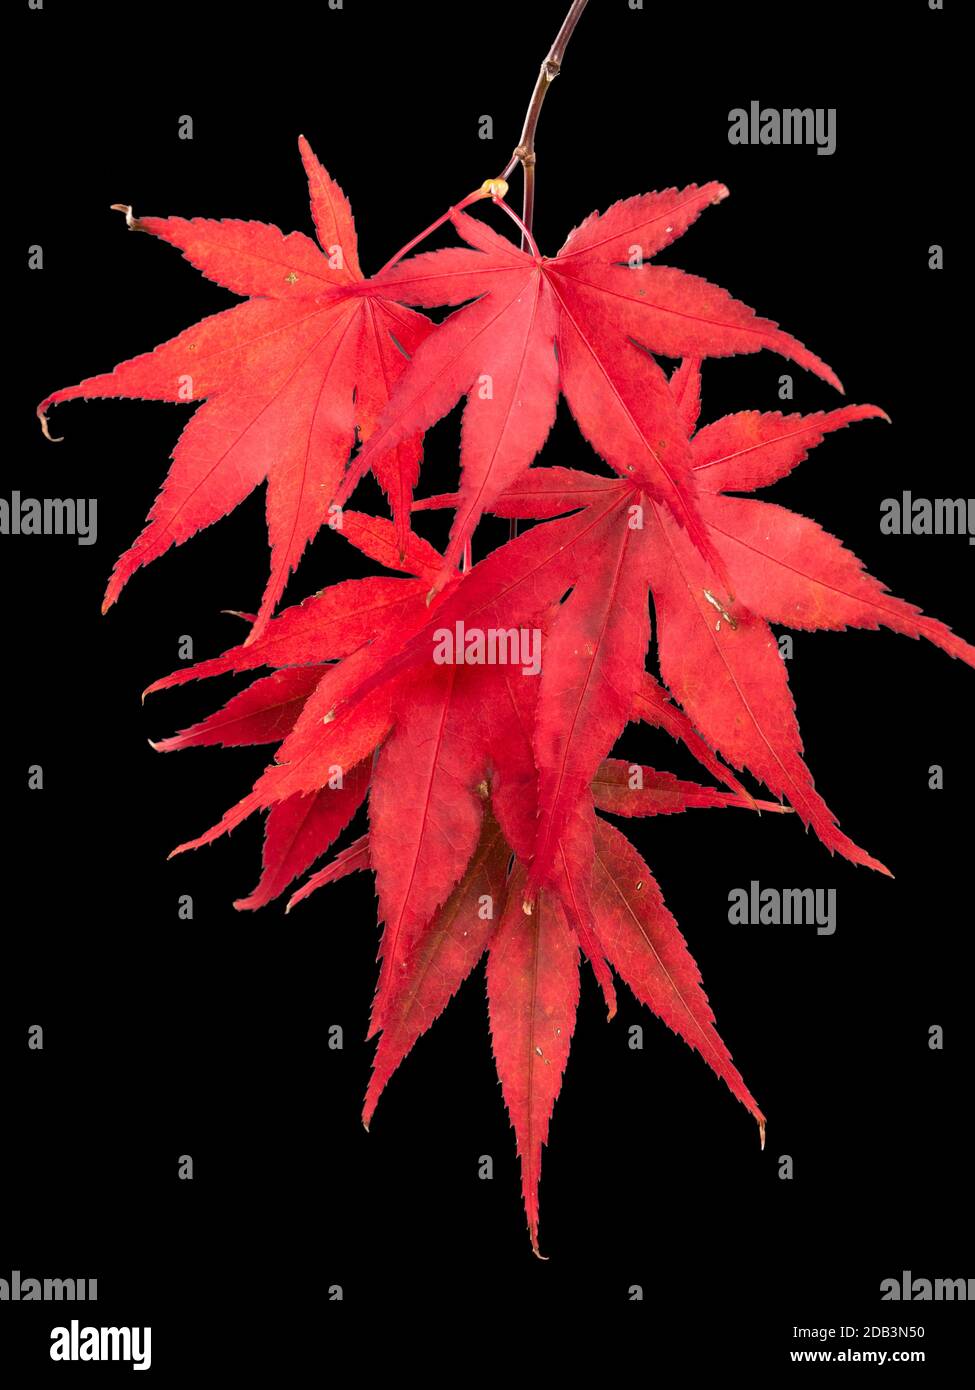 Hojas de otoño de color rojo brillante del arce japonés, Acer palmatum 'Bloodgood' sobre un fondo negro Foto de stock